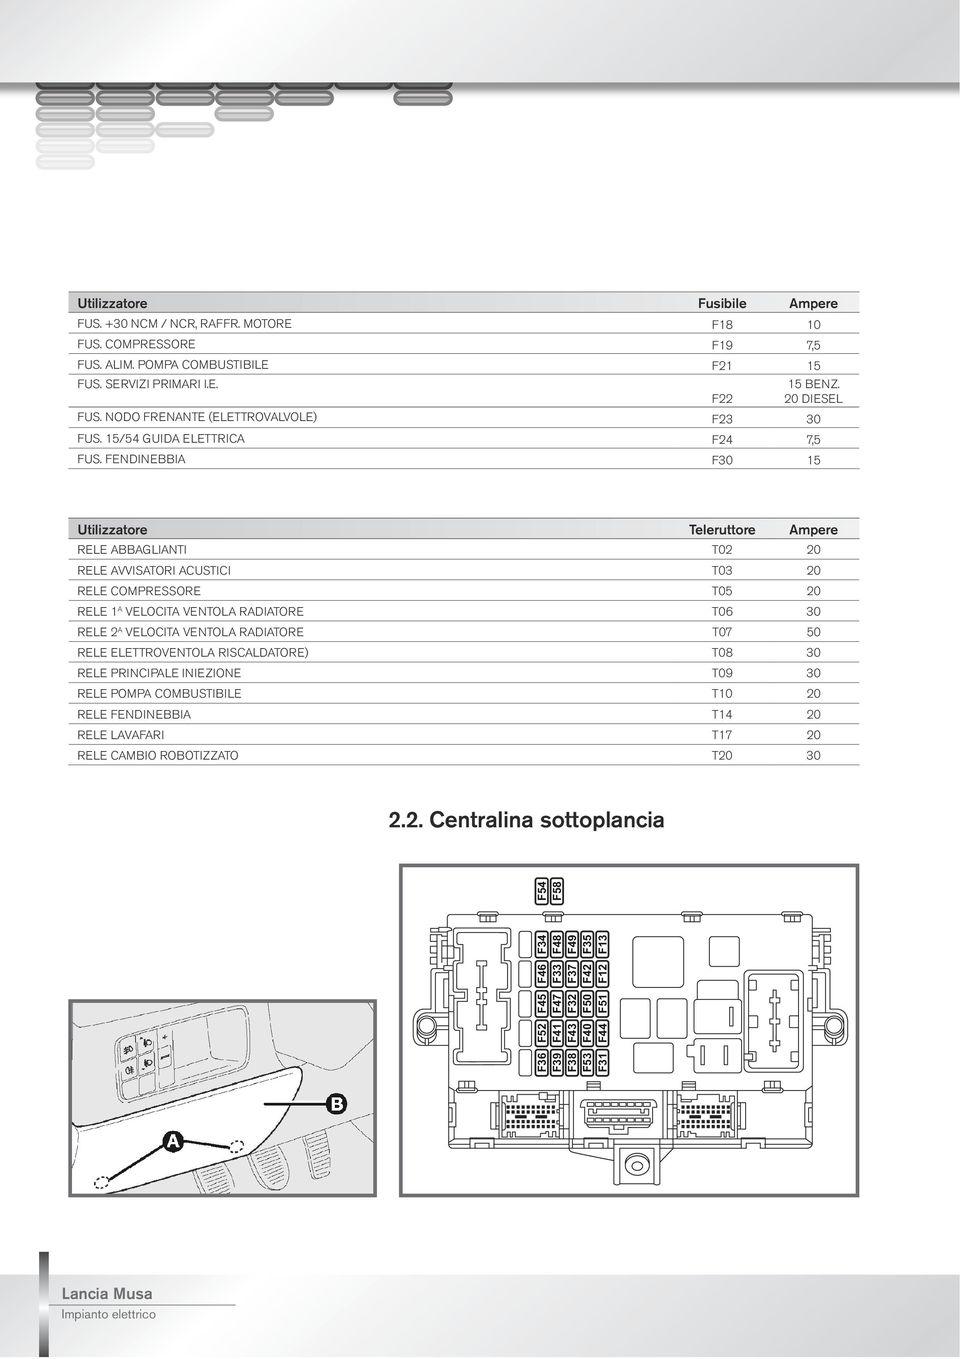 FENDINEBBIA F30 15 Utilizzatore Teleruttore Ampere RELE ABBAGLIANTI T02 20 RELE AVVISATORI ACUSTICI T03 20 RELE COMPRESSORE T05 20 RELE 1 a VELOCITA VENTOLA RADIATORE T06 30 RELE 2 a VELOCITA VENTOLA